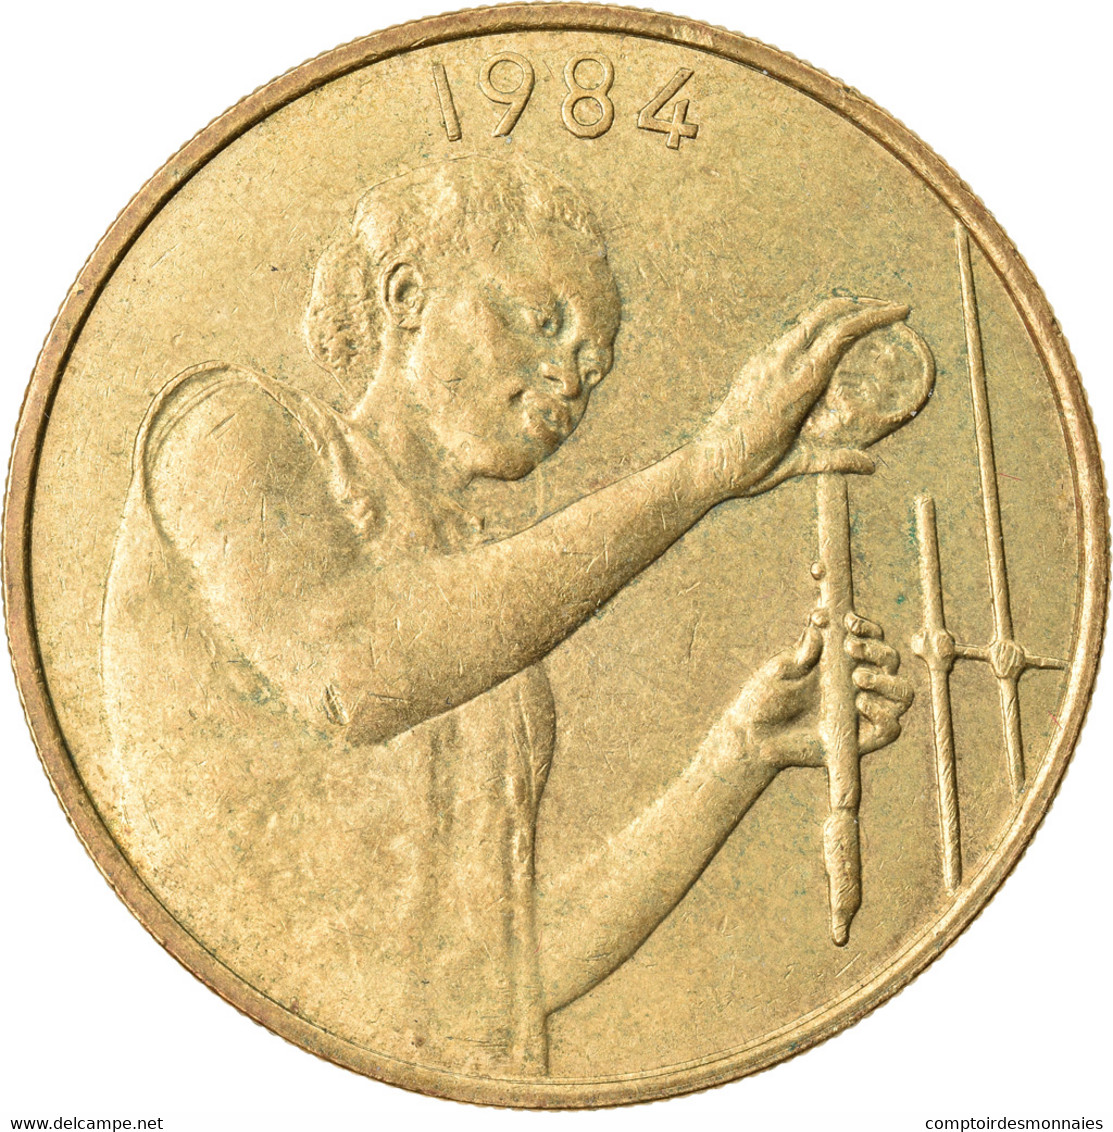 Monnaie, West African States, 25 Francs, 1984, Paris, TTB, Aluminum-Bronze, KM:9 - Côte-d'Ivoire